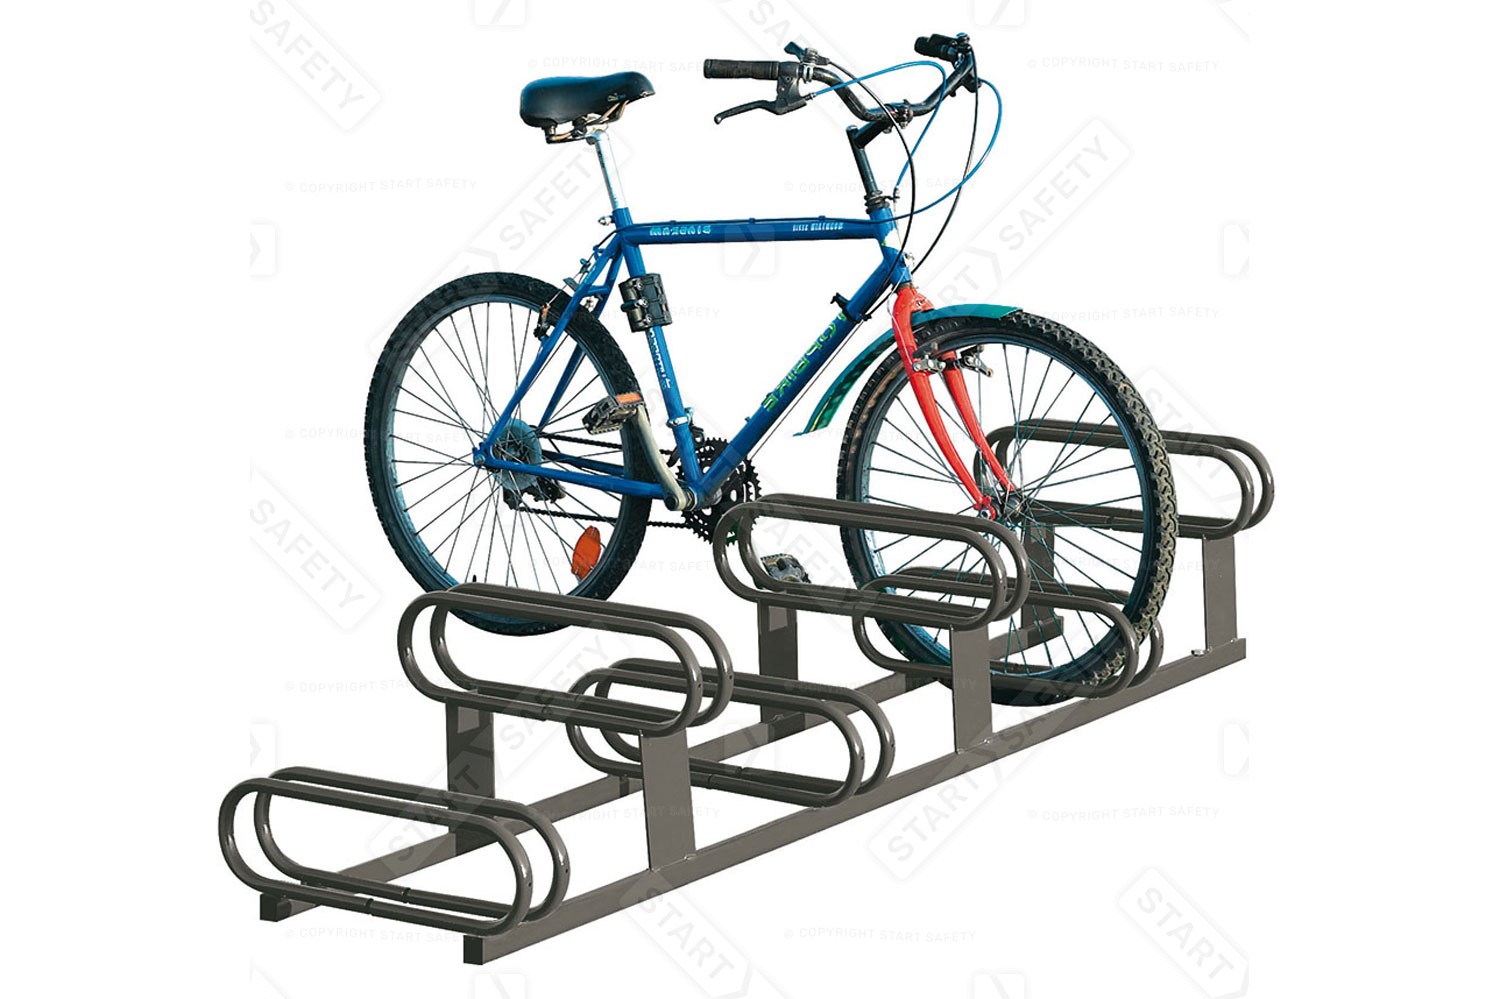 Bike Racks For A Shelter